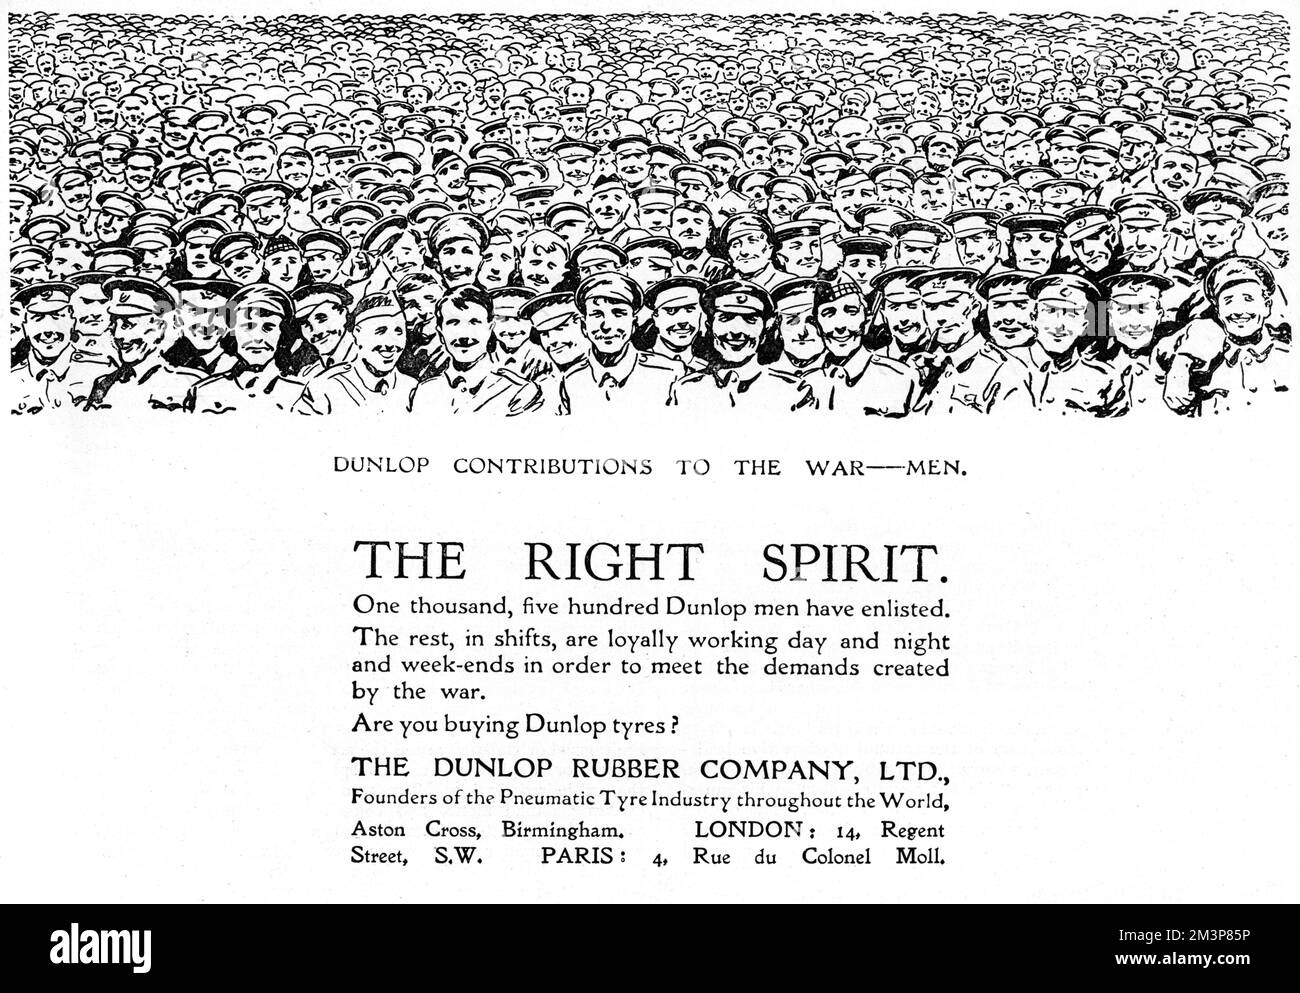 Dunlop Rubber Company pubblicità dalla prima guerra mondiale pubblicizzando il fatto che 1500 dei loro dipendenti avevano arruolato mentre il resto stavano lavorando a turni giorno e notte per soddisfare le richieste della guerra. L'acquisto di pneumatici Dunlop è stato quindi un dovere patriottico! Data: 1915 Foto Stock